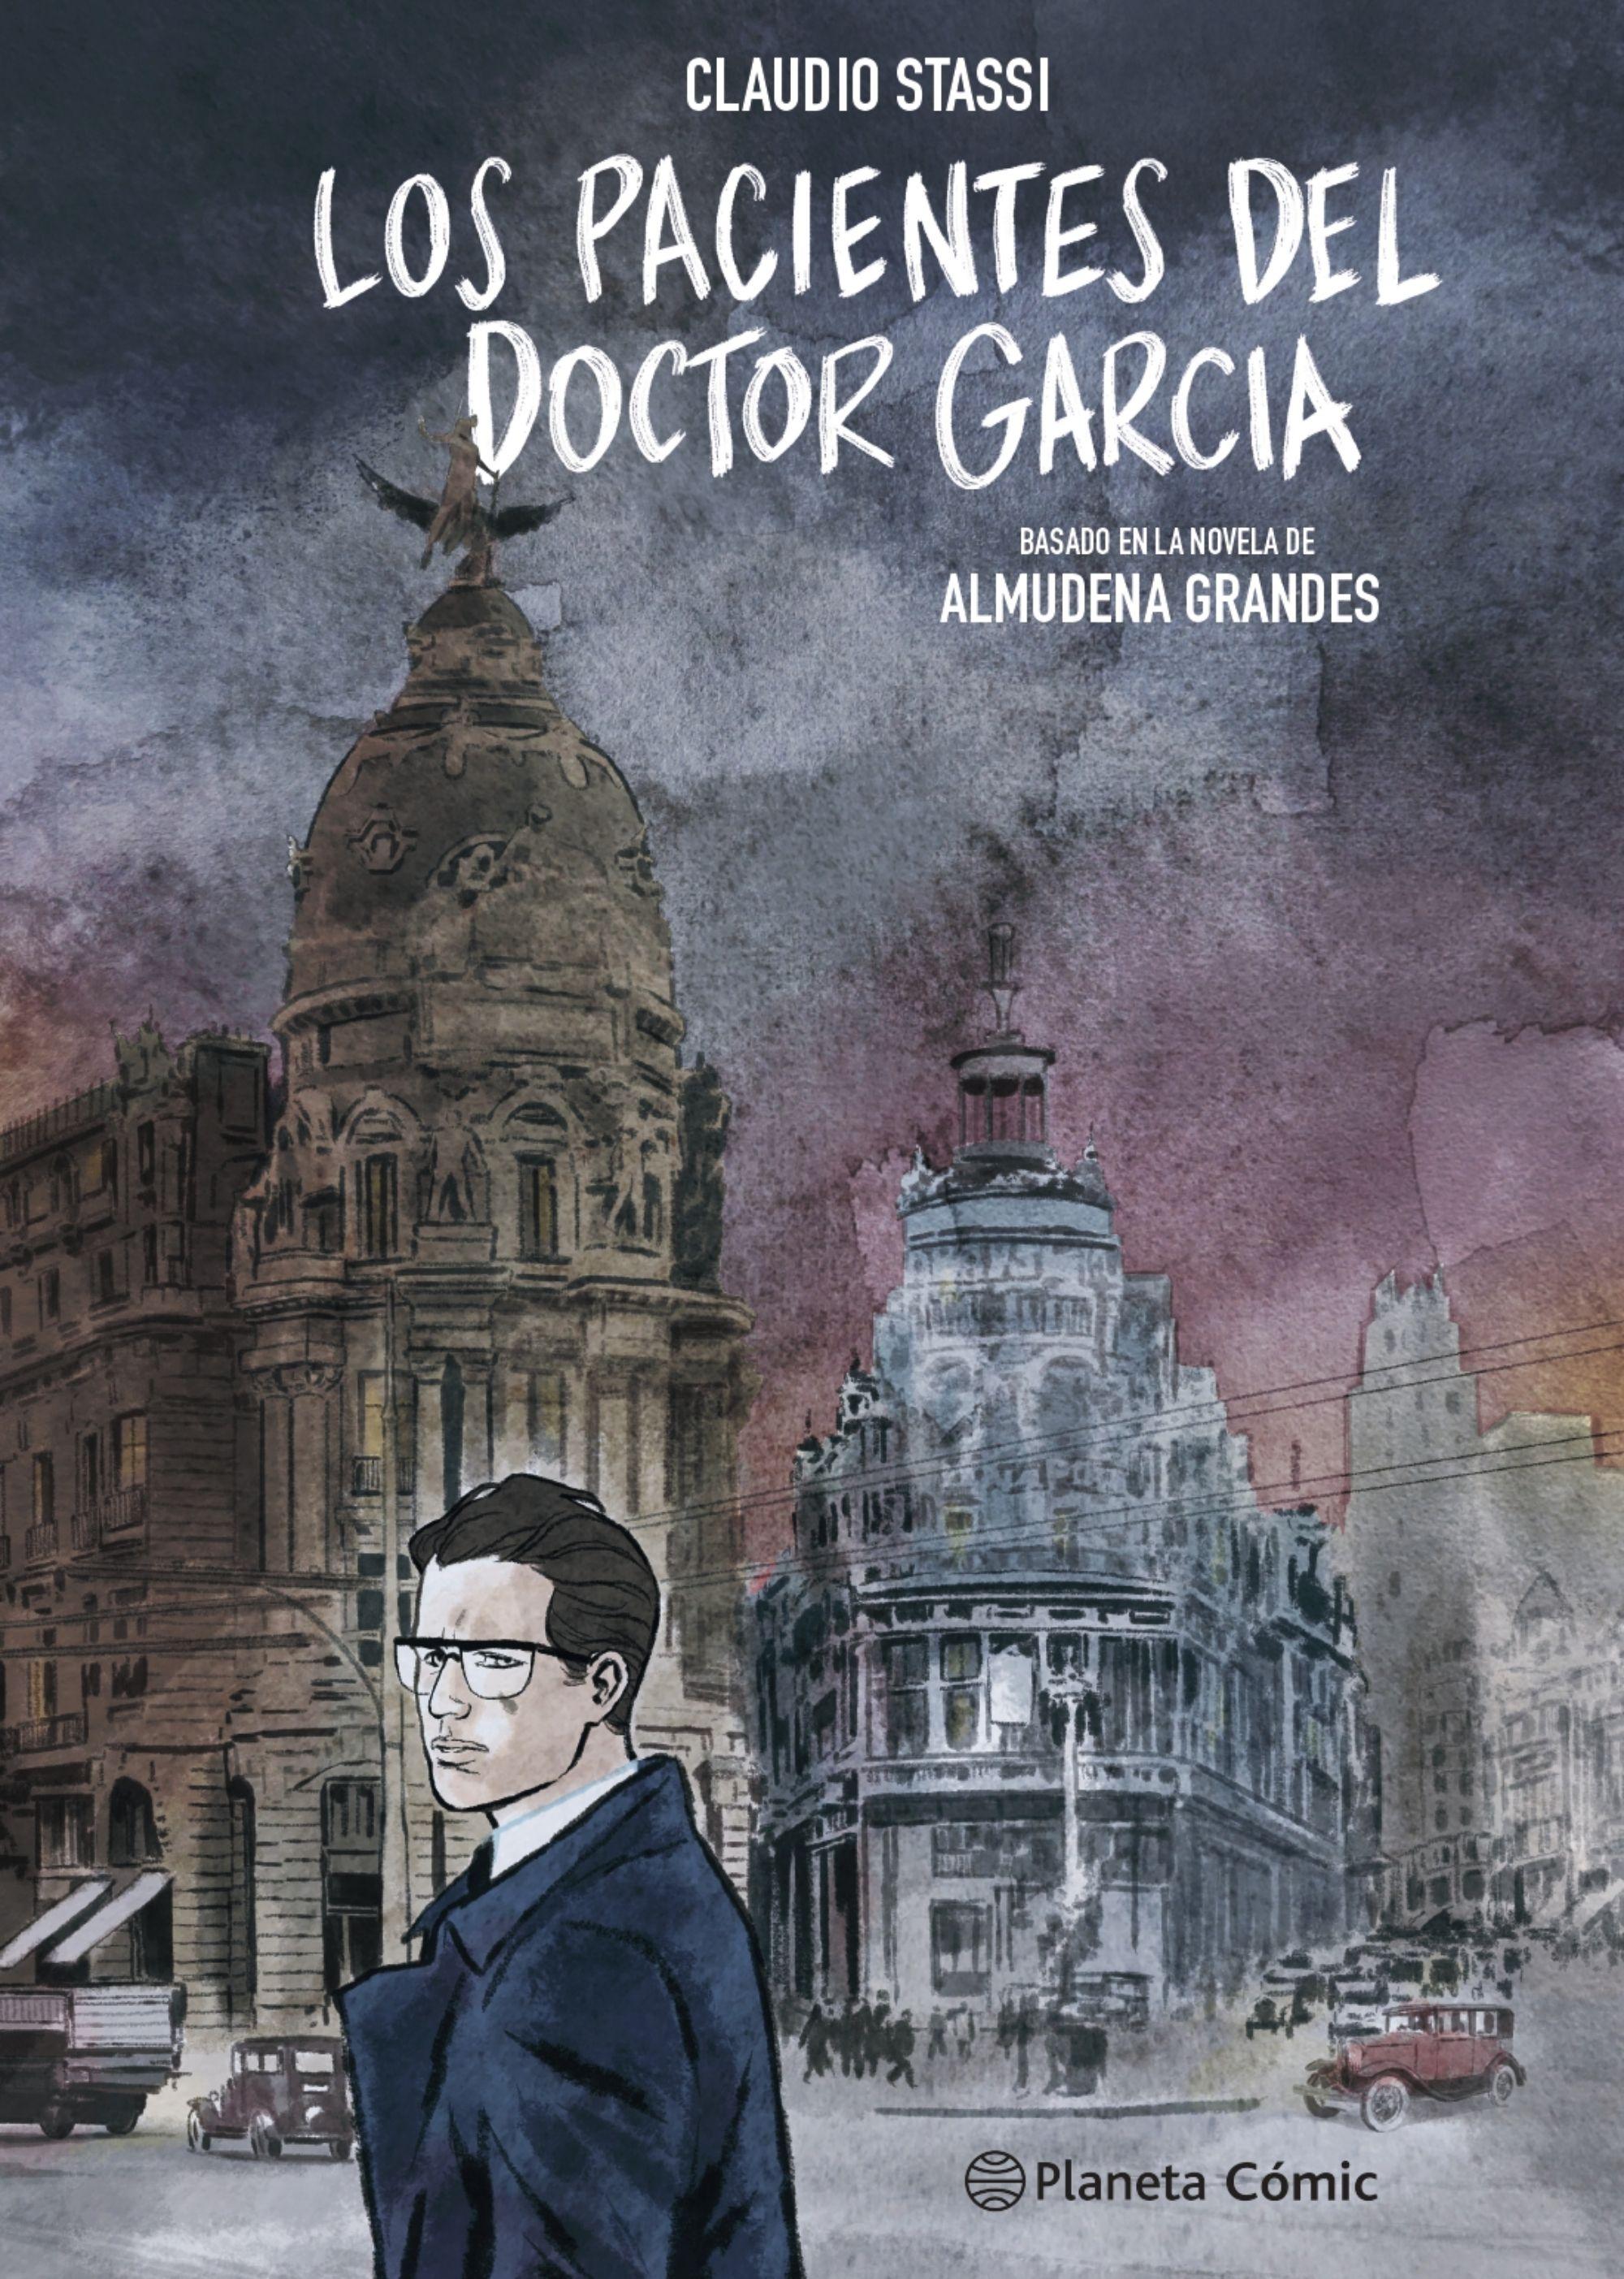 Los pacientes del doctor García (novela gráfica) "Basado en la novela de Almudena Grandes". 